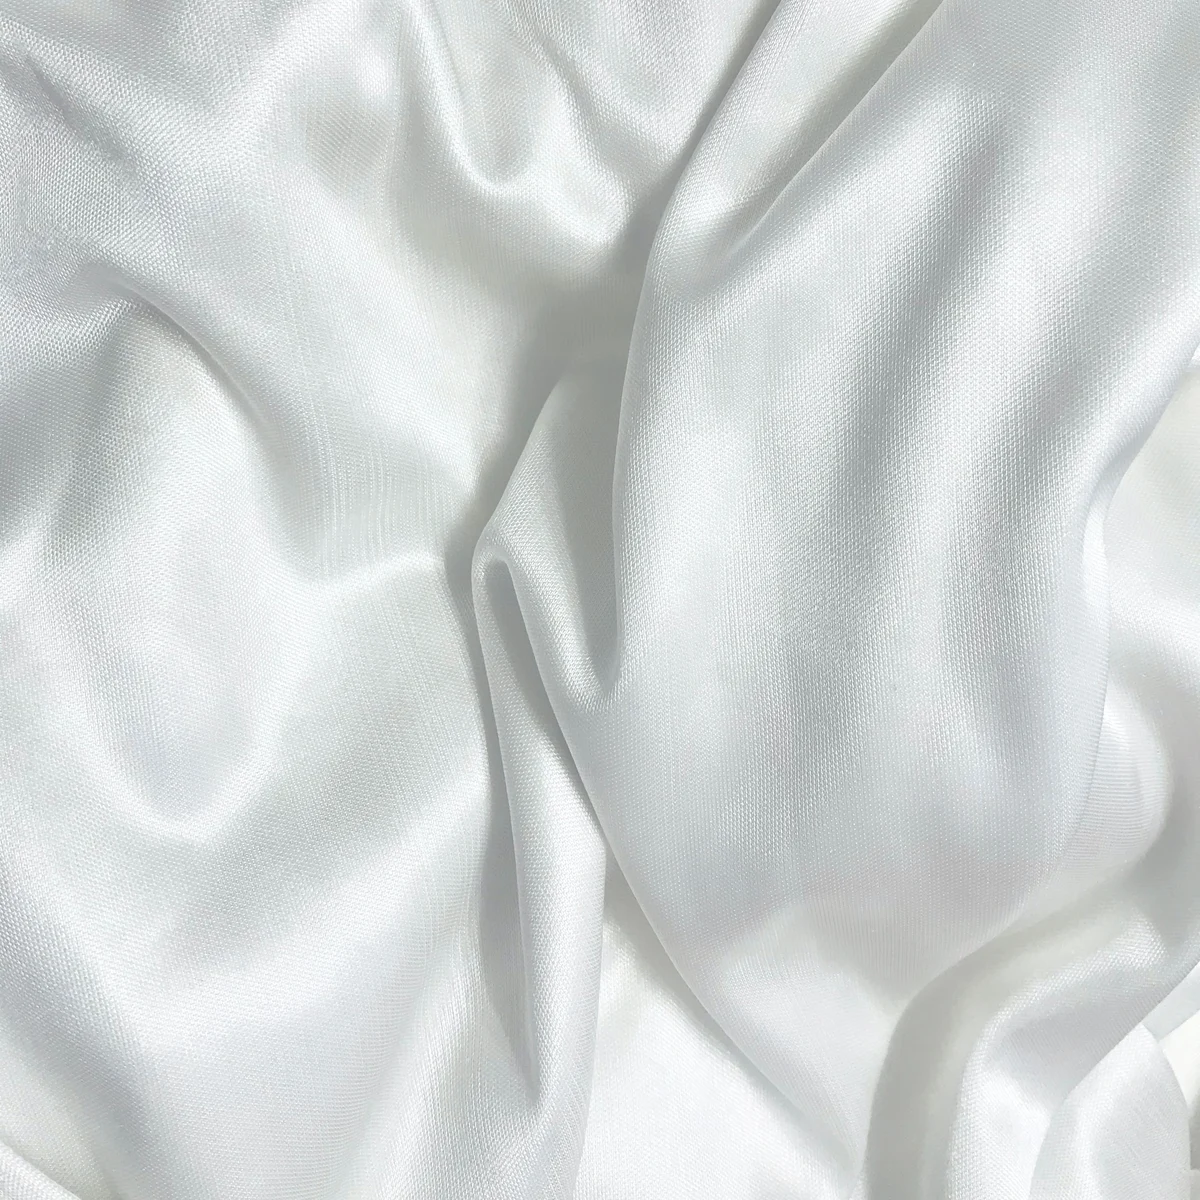 Cómo lavar la ropa blanca muy sucia? Trucos para que quede impecable